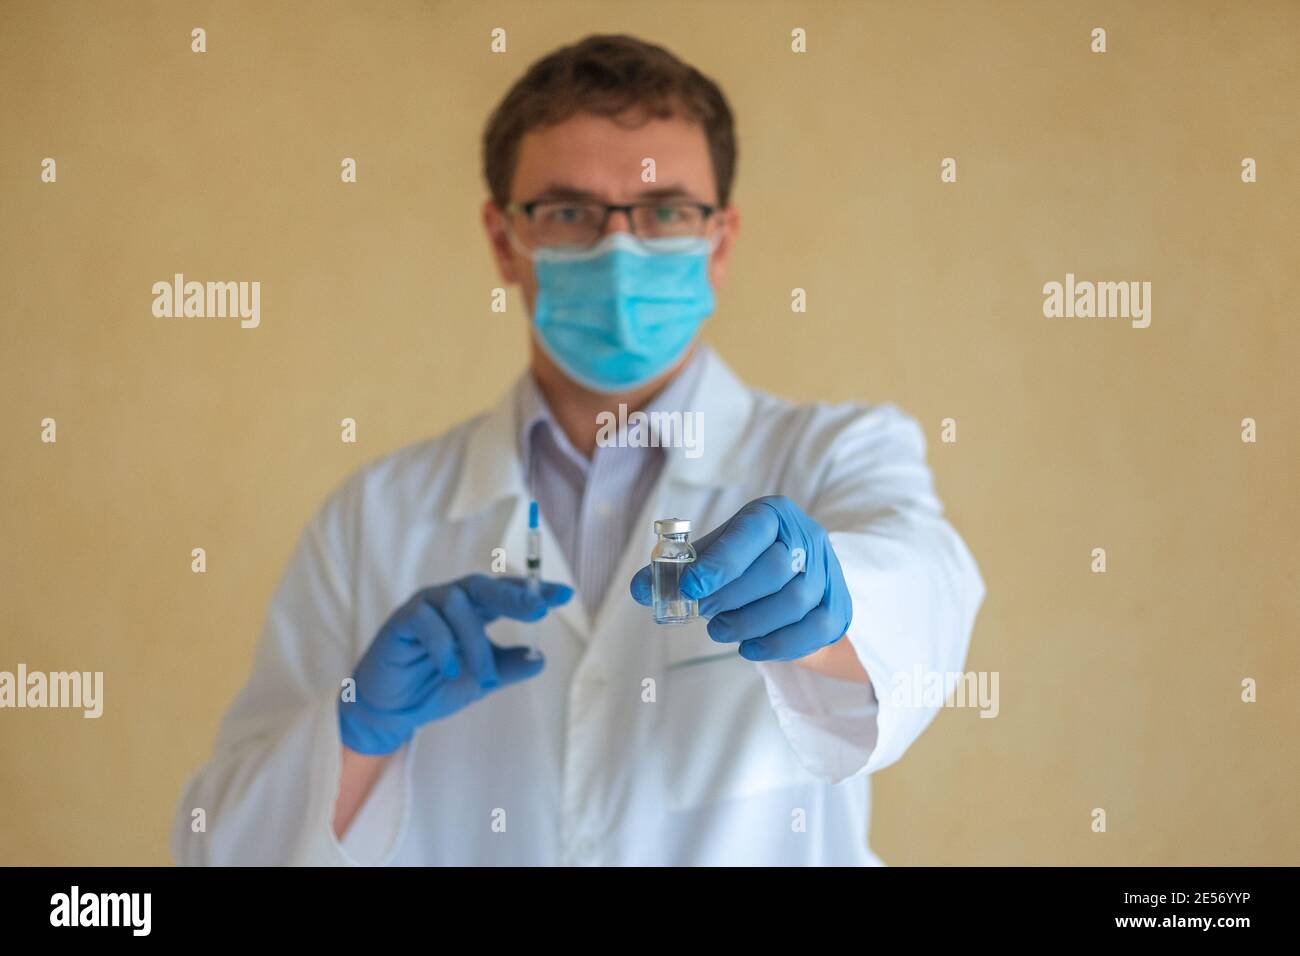 Ein Mann Arzt in einer Schutzmaske und blauen Latexhandschuhen hält eine Ampulle mit einem Impfstoff und einer Spritze. Konzentrieren Sie sich auf die Ampulle Stockfoto